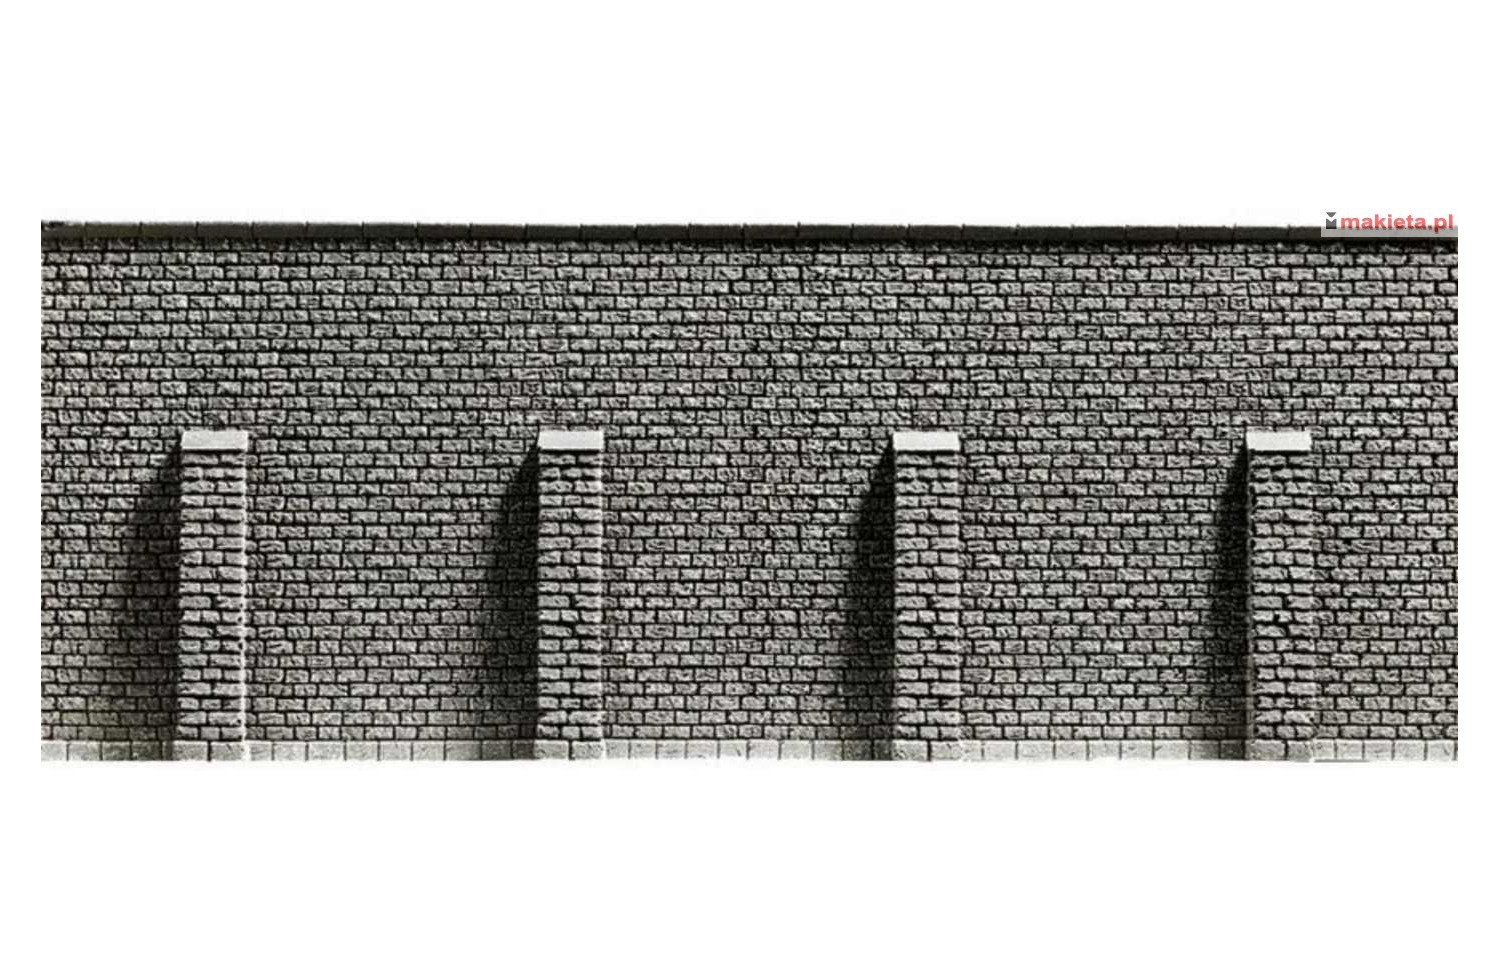 NOCH 34856. Mur oporowy z przyporami, 19,8 x 7,4 cm, skala N 1:160